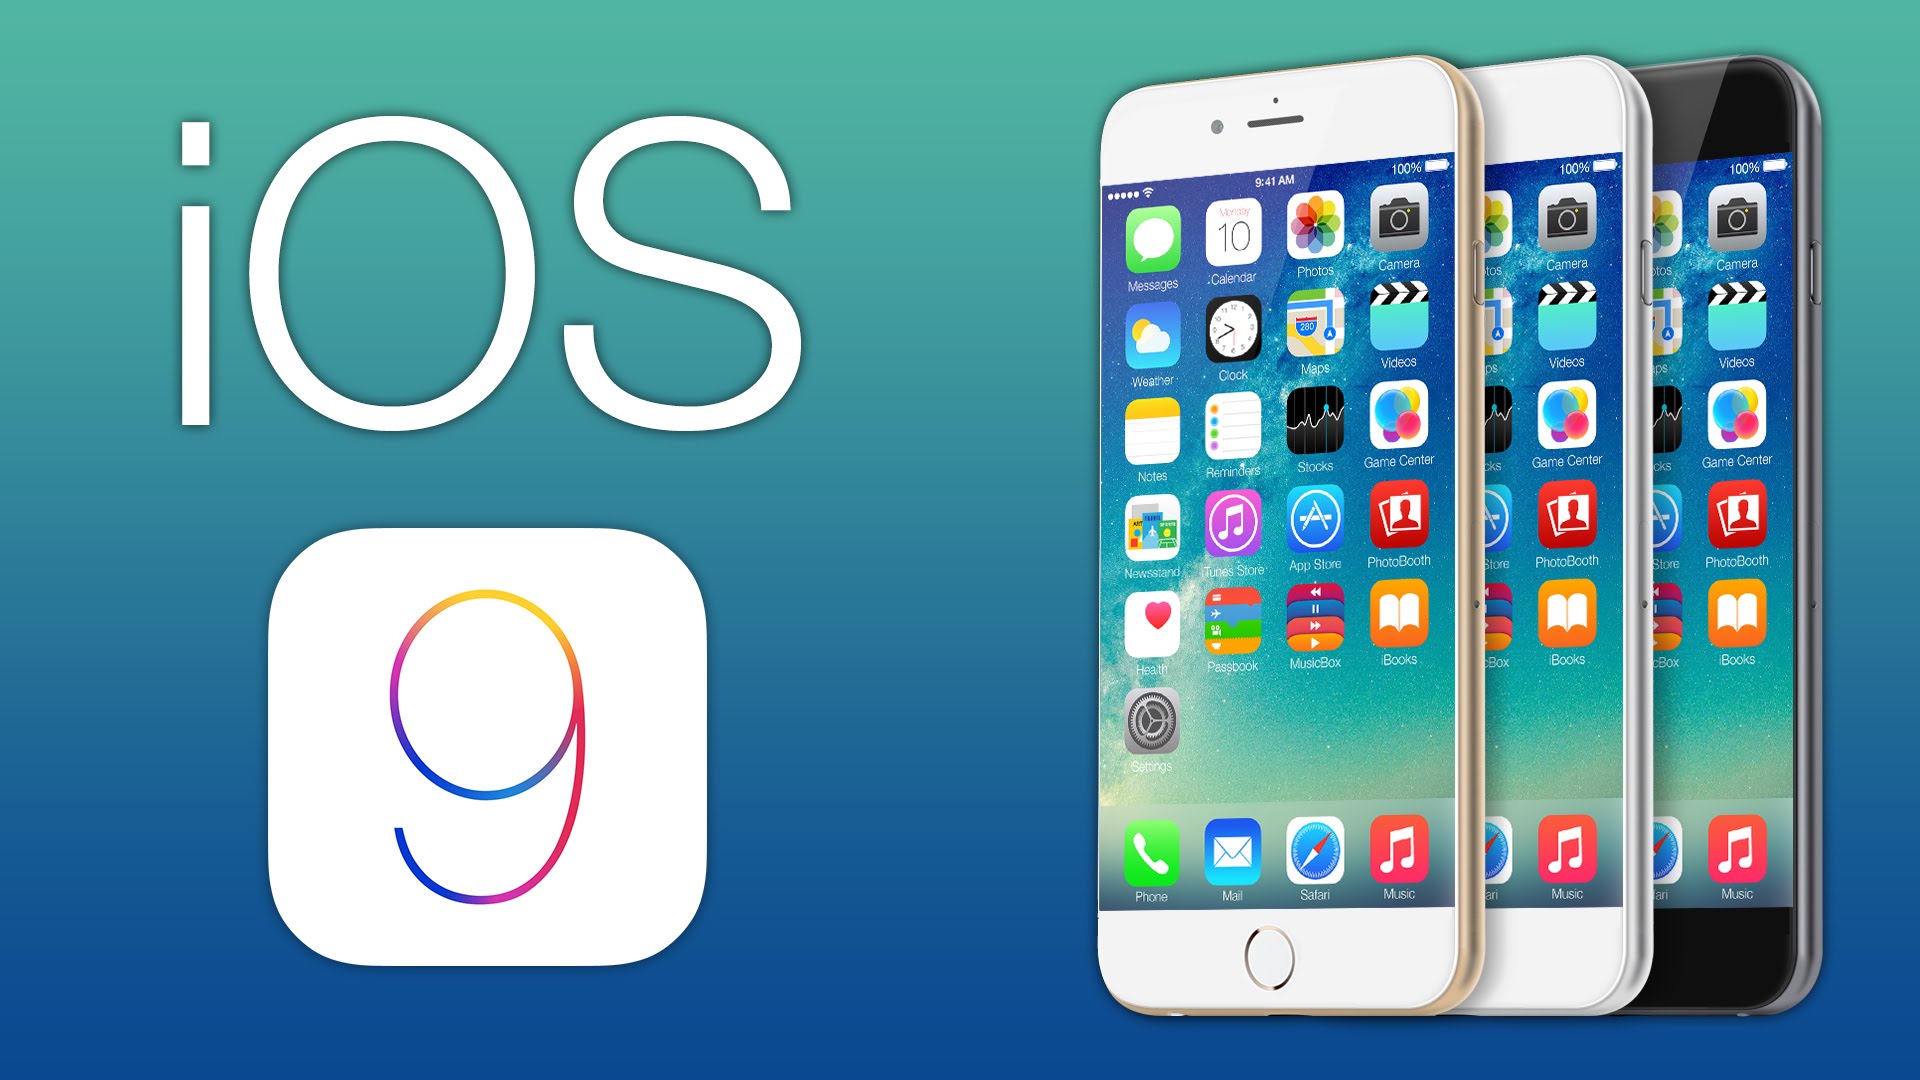 Come aggiornare iOS9 e quali sono le novità per Iphone e Ipad?